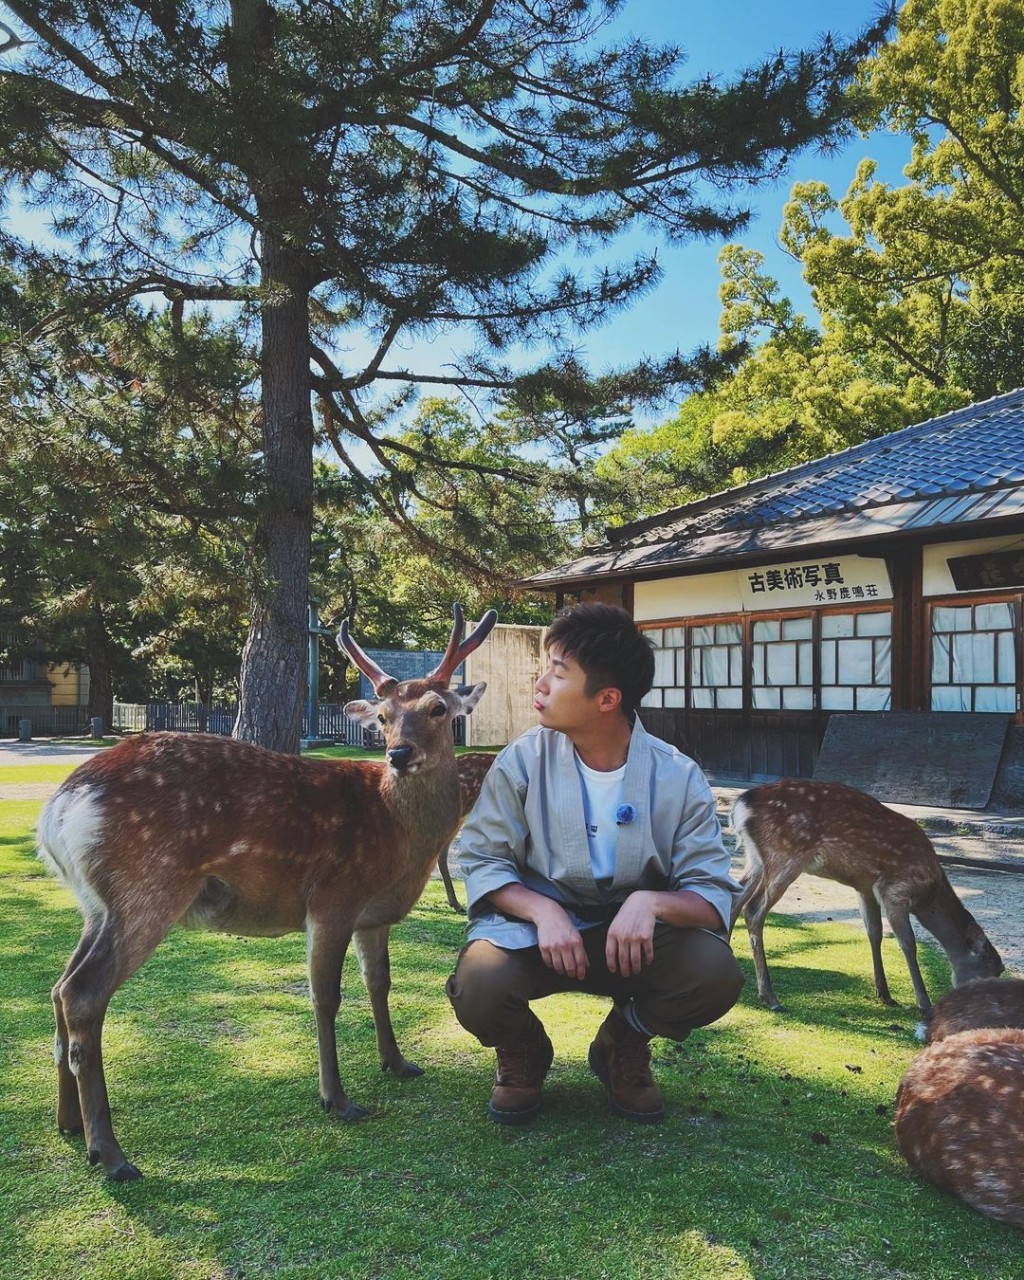 以往到奈良，都是到東大寺、春日大社等觀光景點遊覽，又或以餵小鹿為樂。